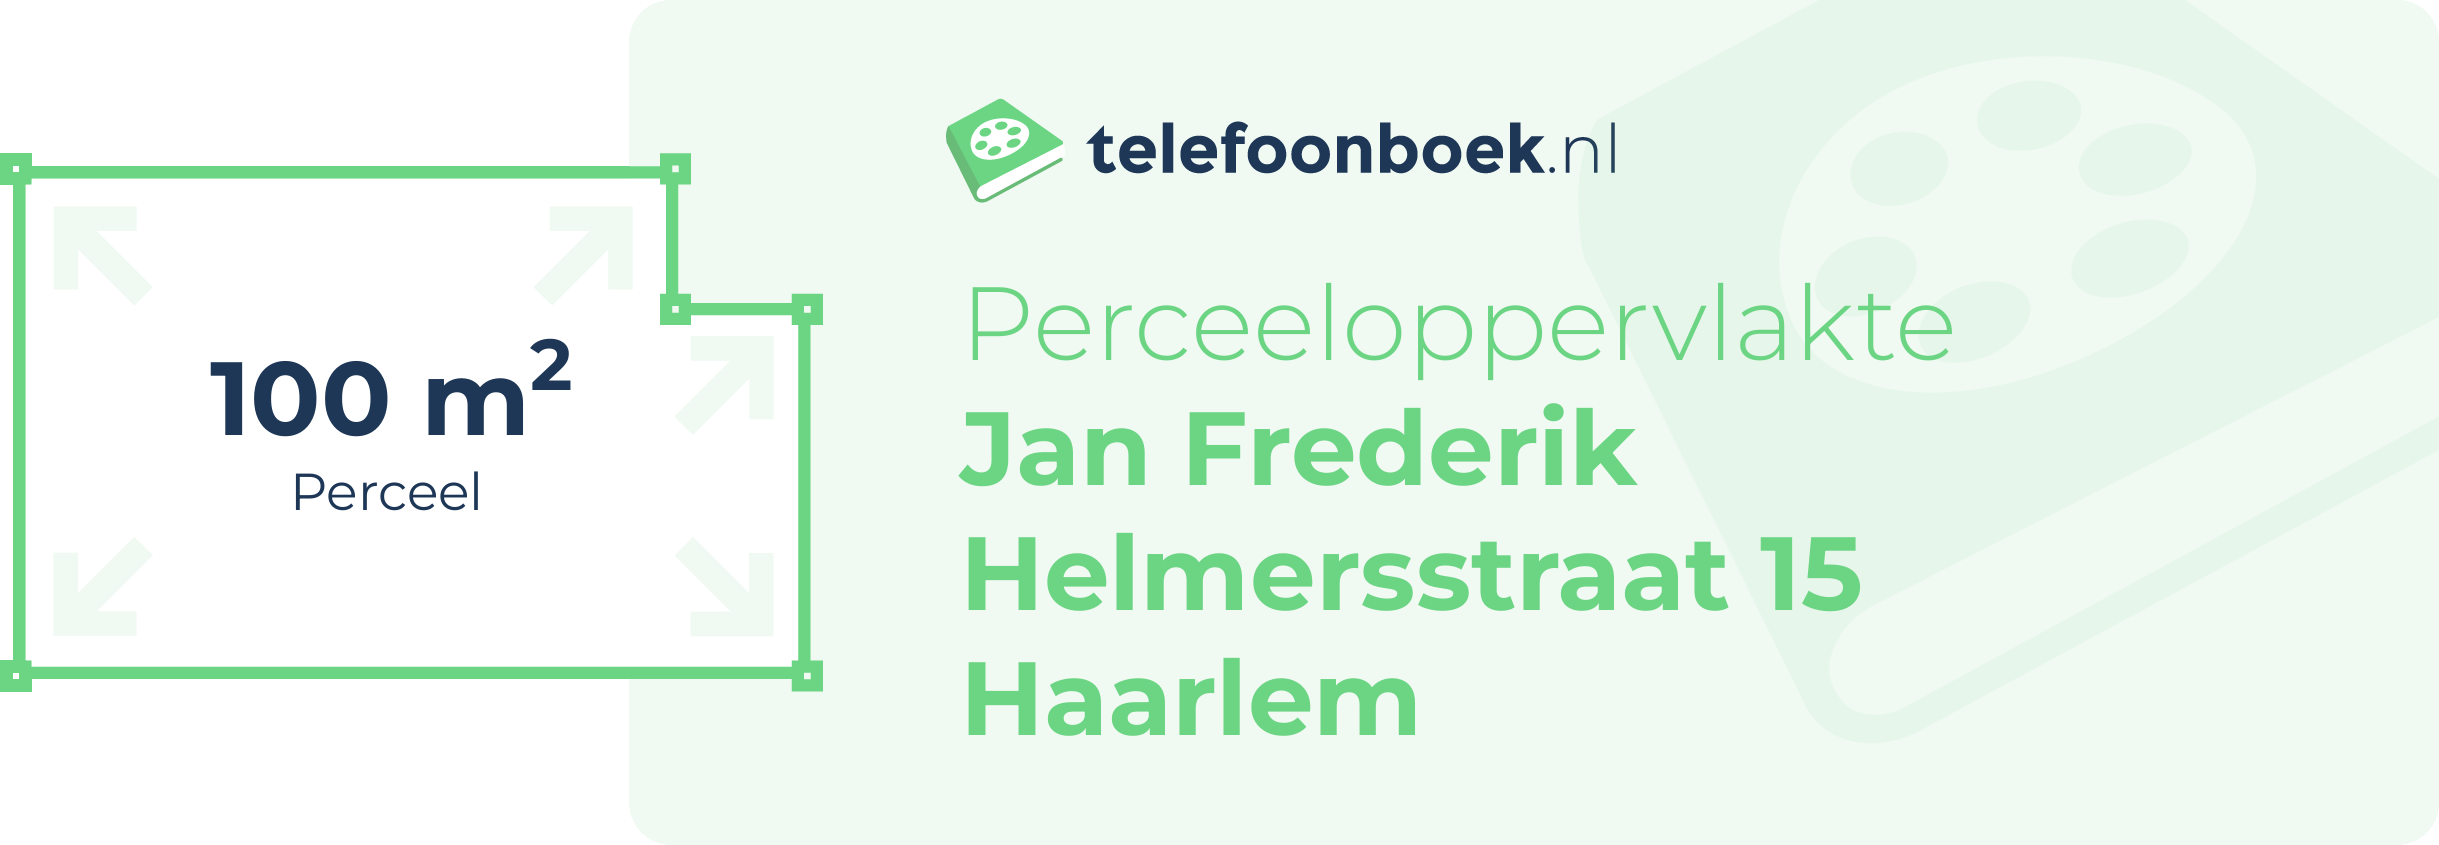 Perceeloppervlakte Jan Frederik Helmersstraat 15 Haarlem